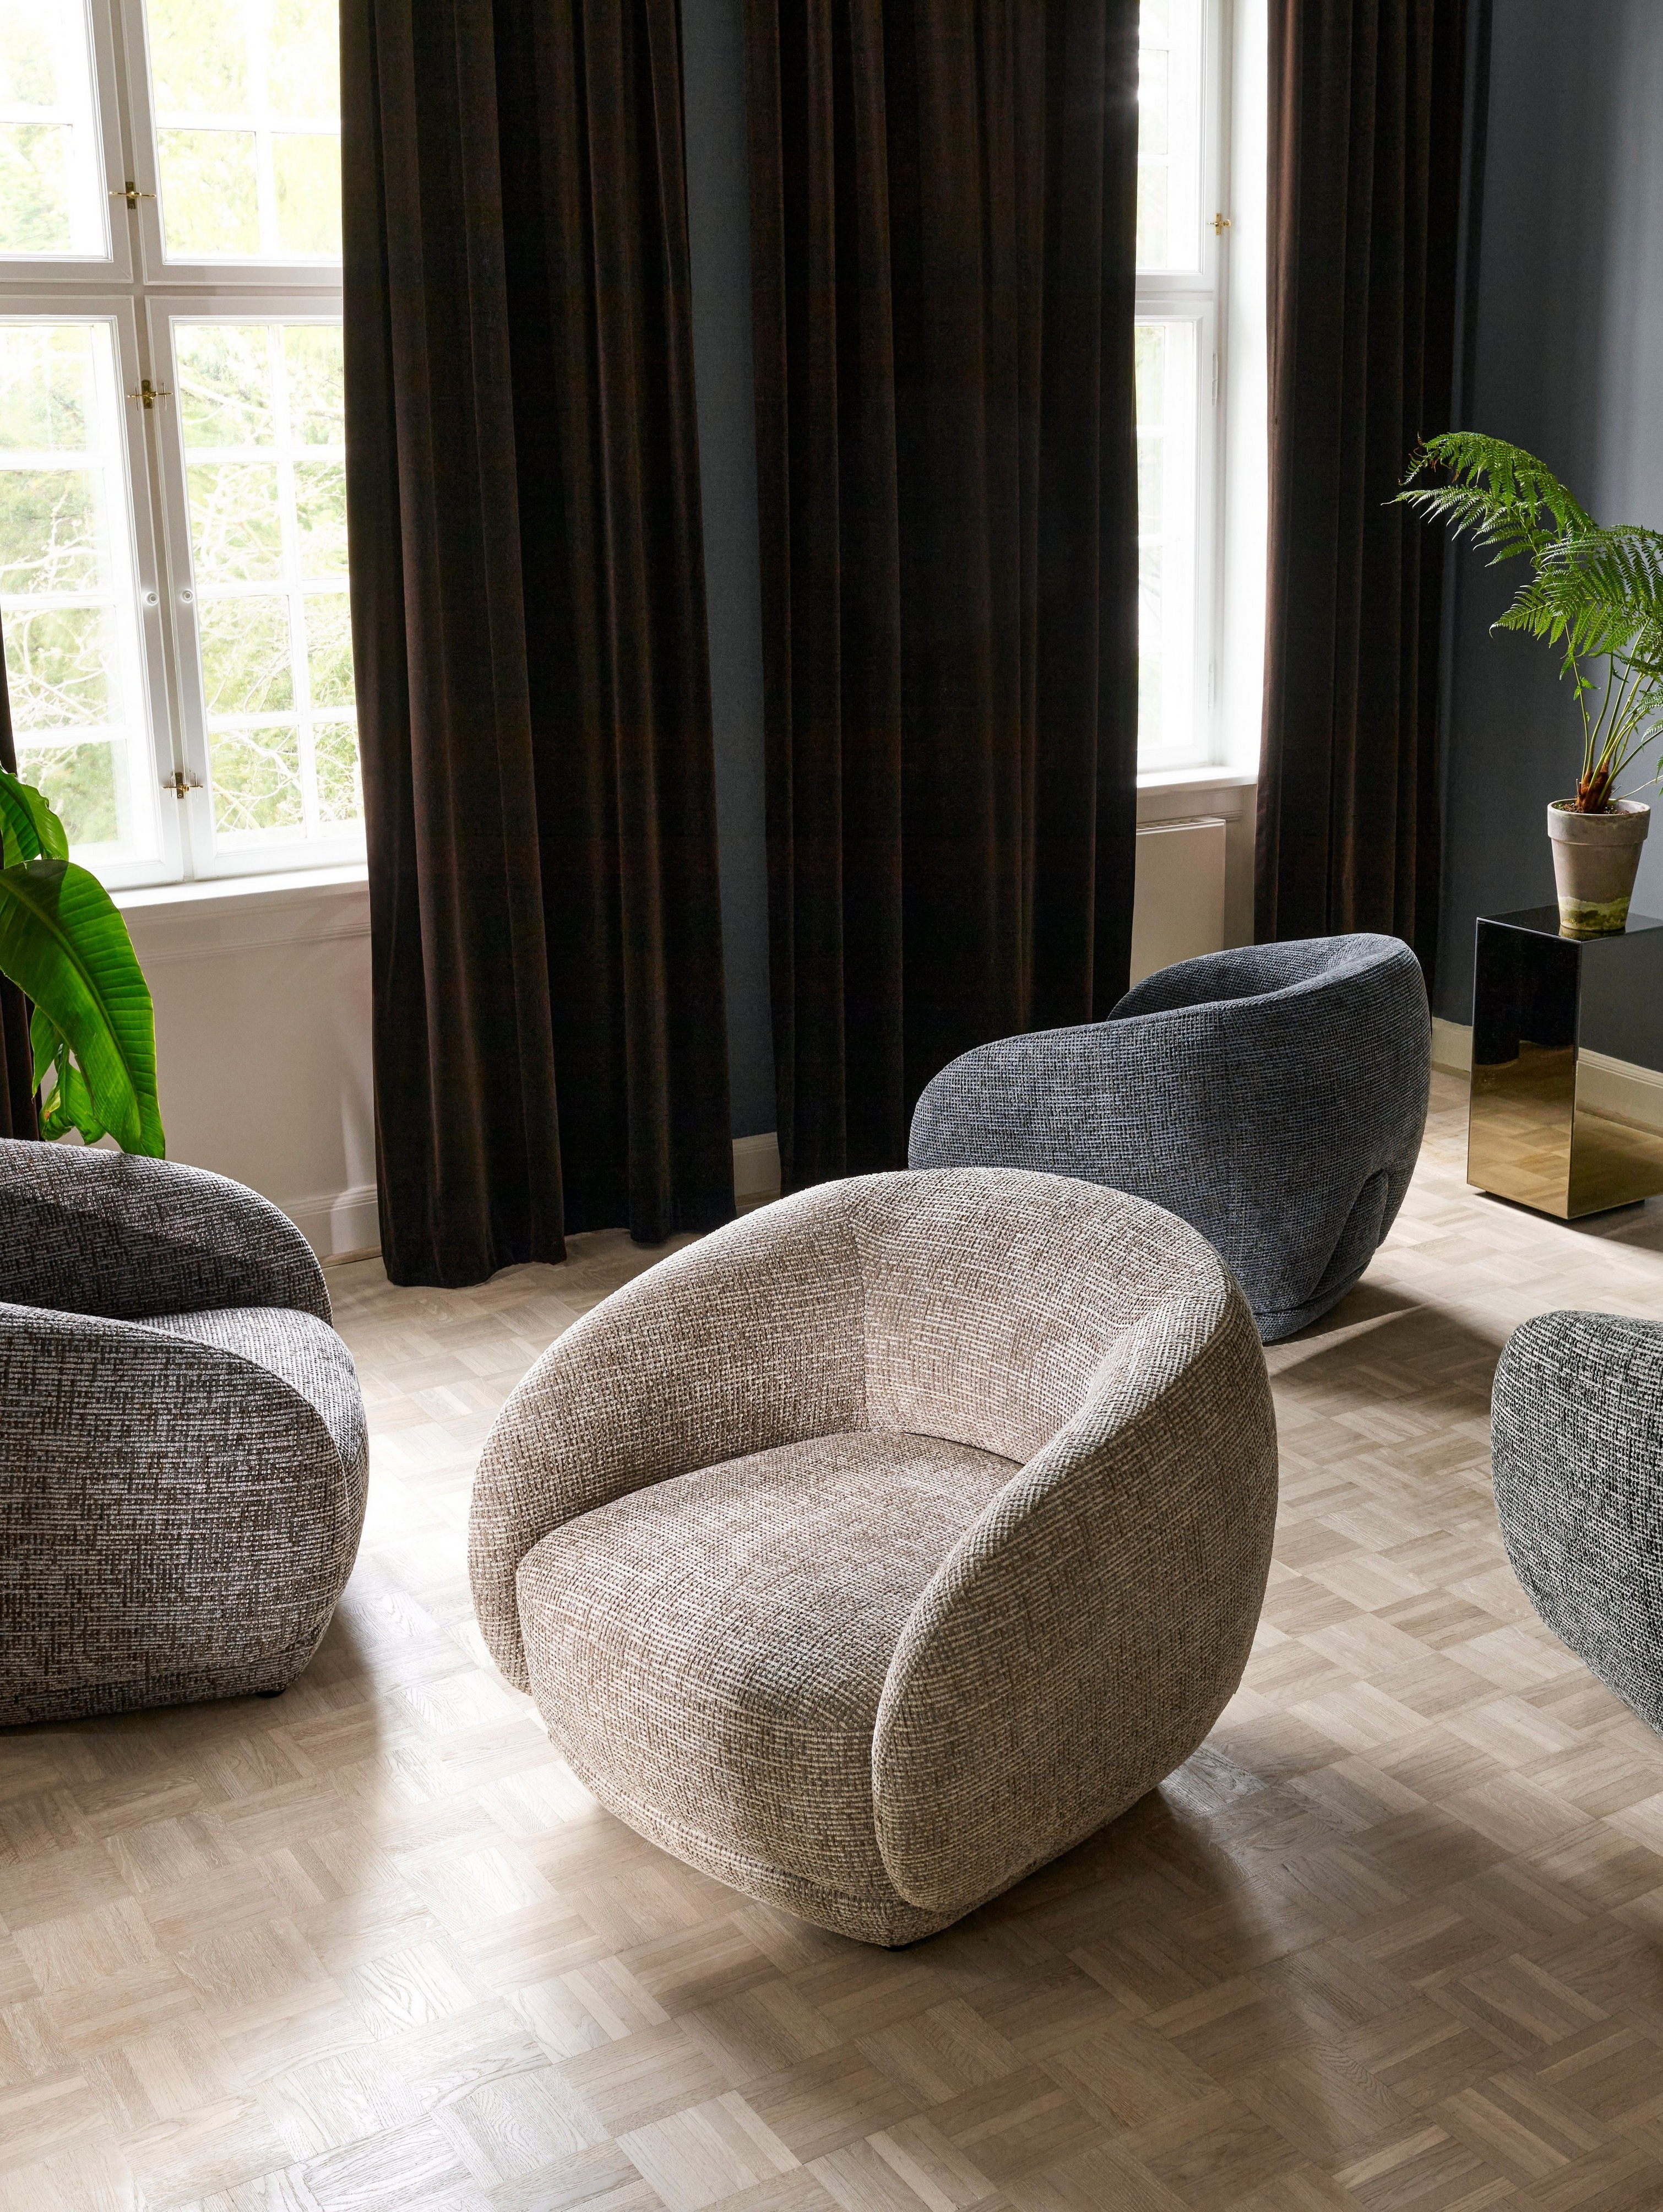 Quatre chaises Bolzano dans un salon placées dans des directions aléatoires.